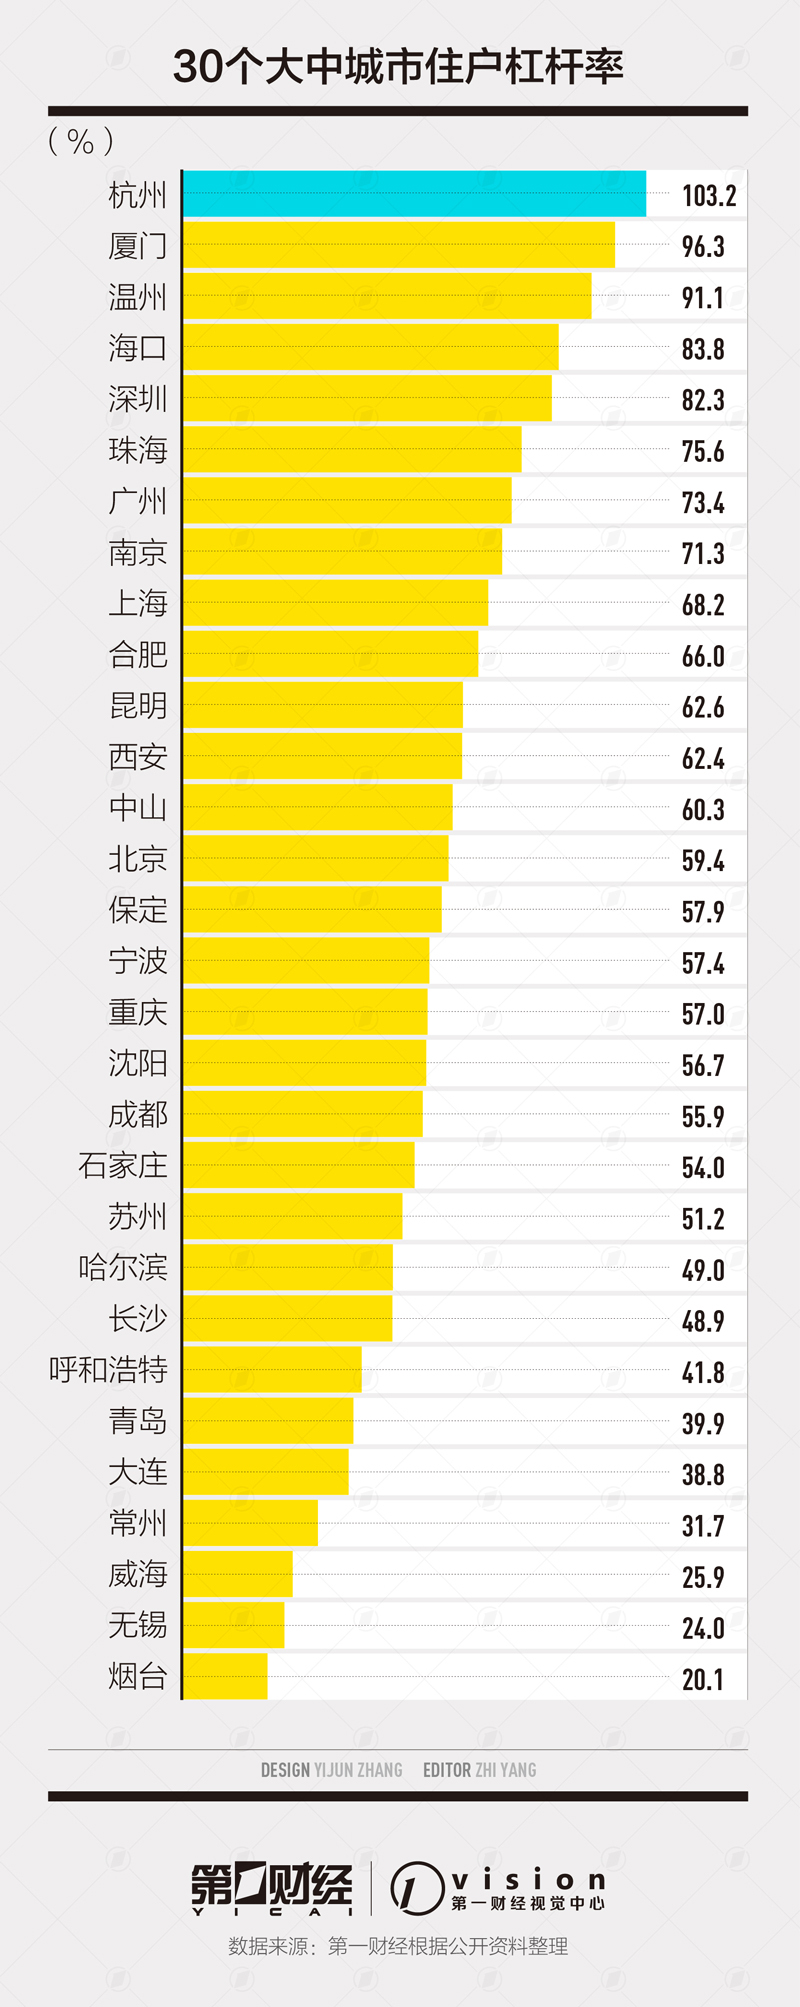 30个大中城市住户杠杆率杭州居首 省份排行北京列第三